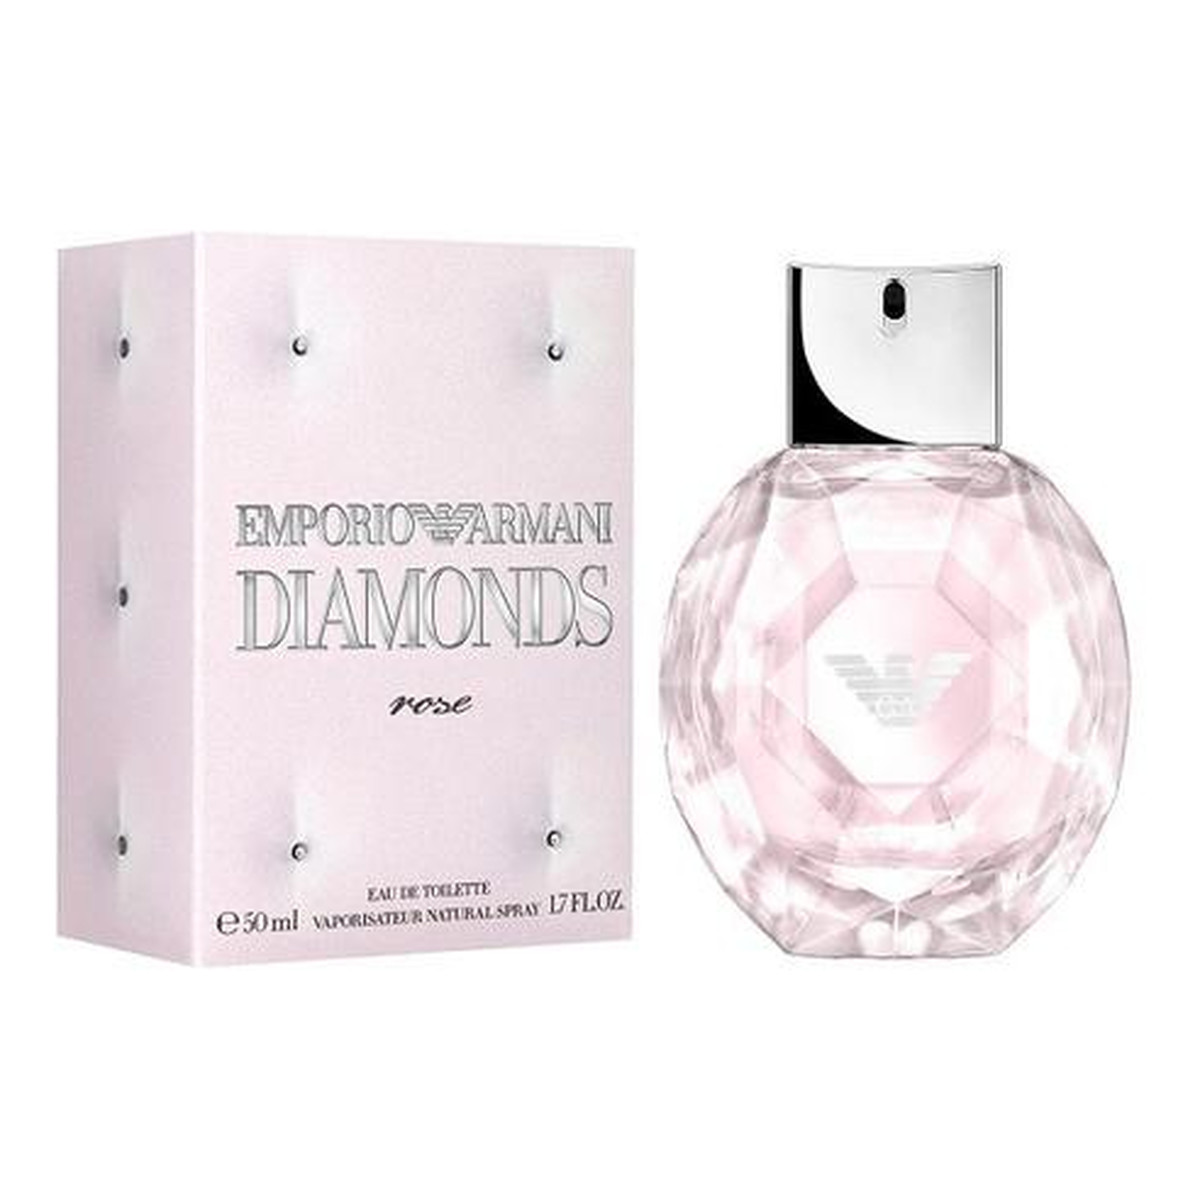 Giorgio Armani Emporio Diamonds Rose Woda Toaletowa 50ml